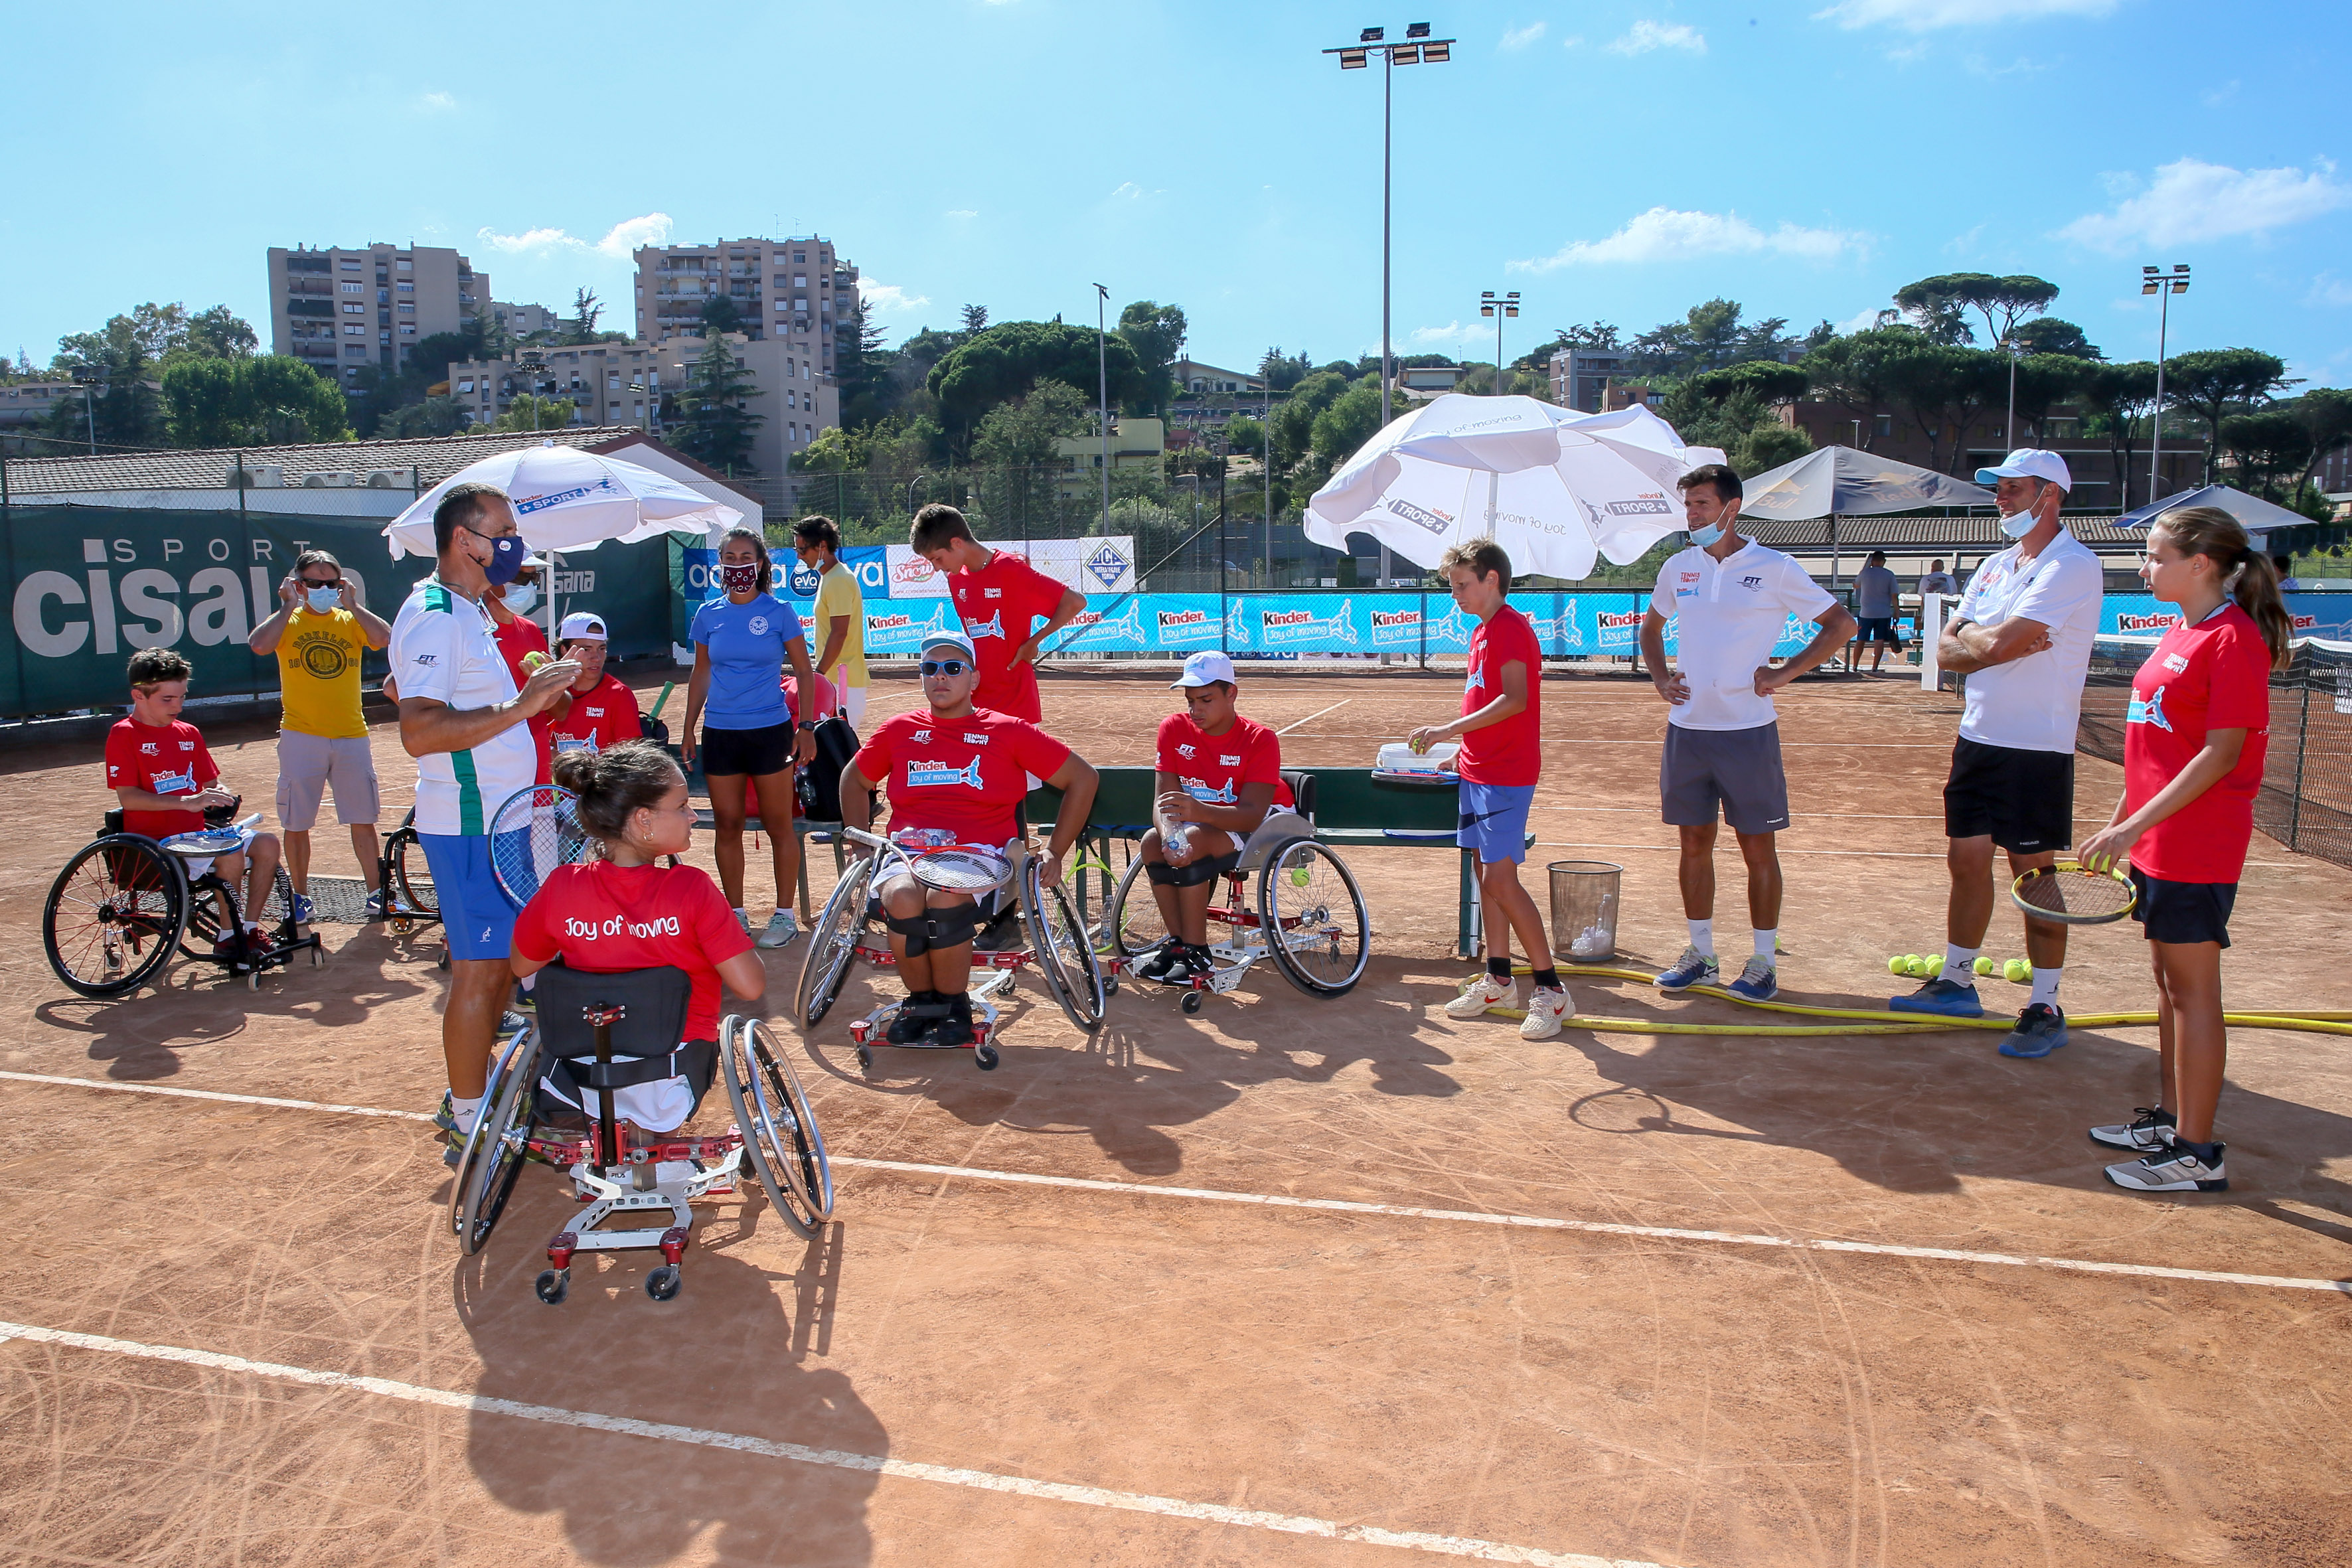 Le immagini del Junior Wheelchair Tennis Trophy FIT Kinder in scena sulla terra rossa di Roma 